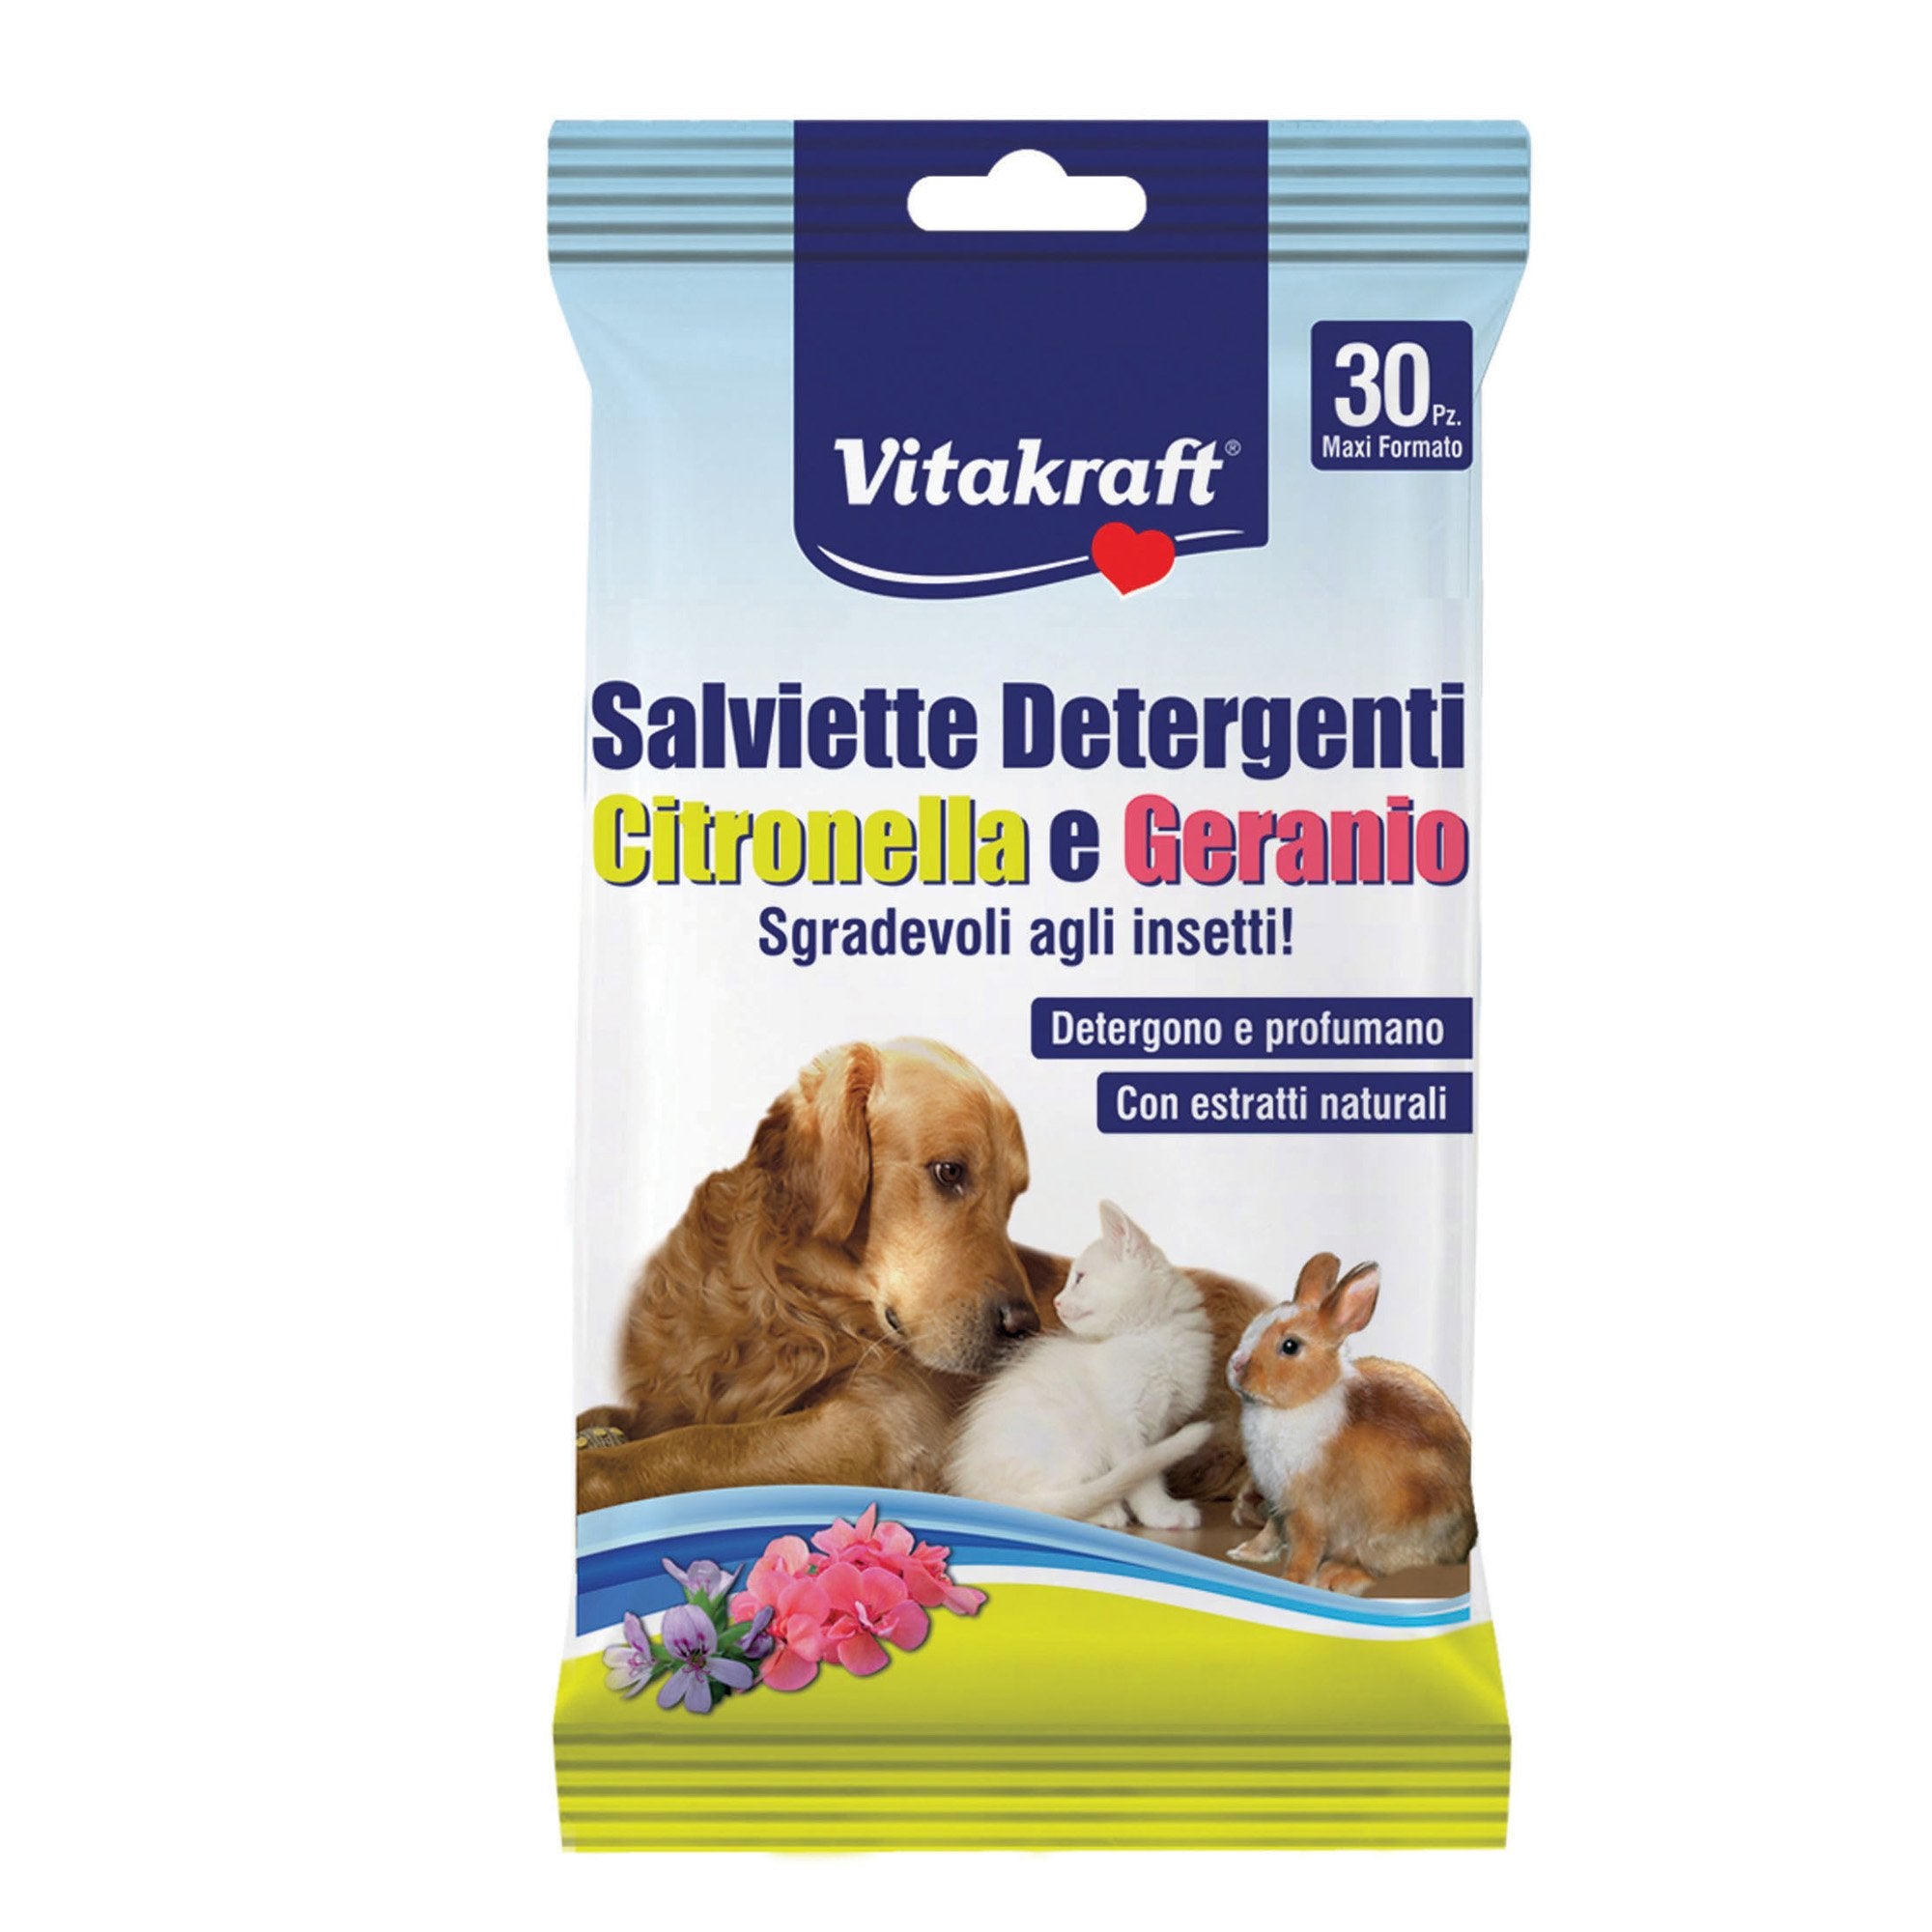 vitakraft-confezione-30-salviette-citronella-geranio-cani-gatti-roditori